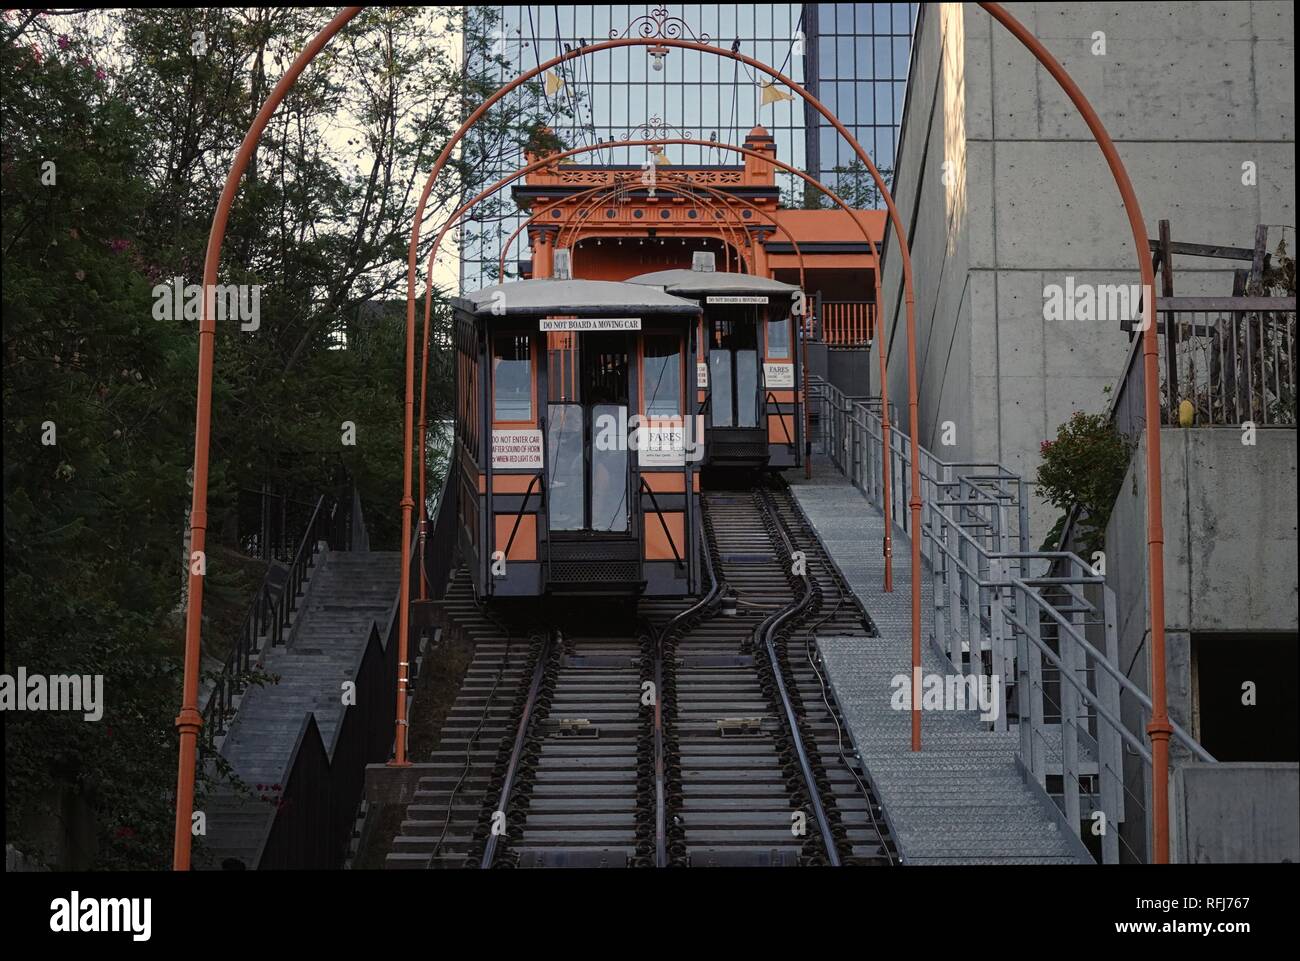 Los Angeles, CA / STATI UNITI D'AMERICA - sett. 23, 2018: Angelo della funicolare di volo di vagoni ferroviari sono mostrati in funzionamento durante un soleggiato, tardo pomeriggio giorno nel centro cittadino di L.A. Foto Stock